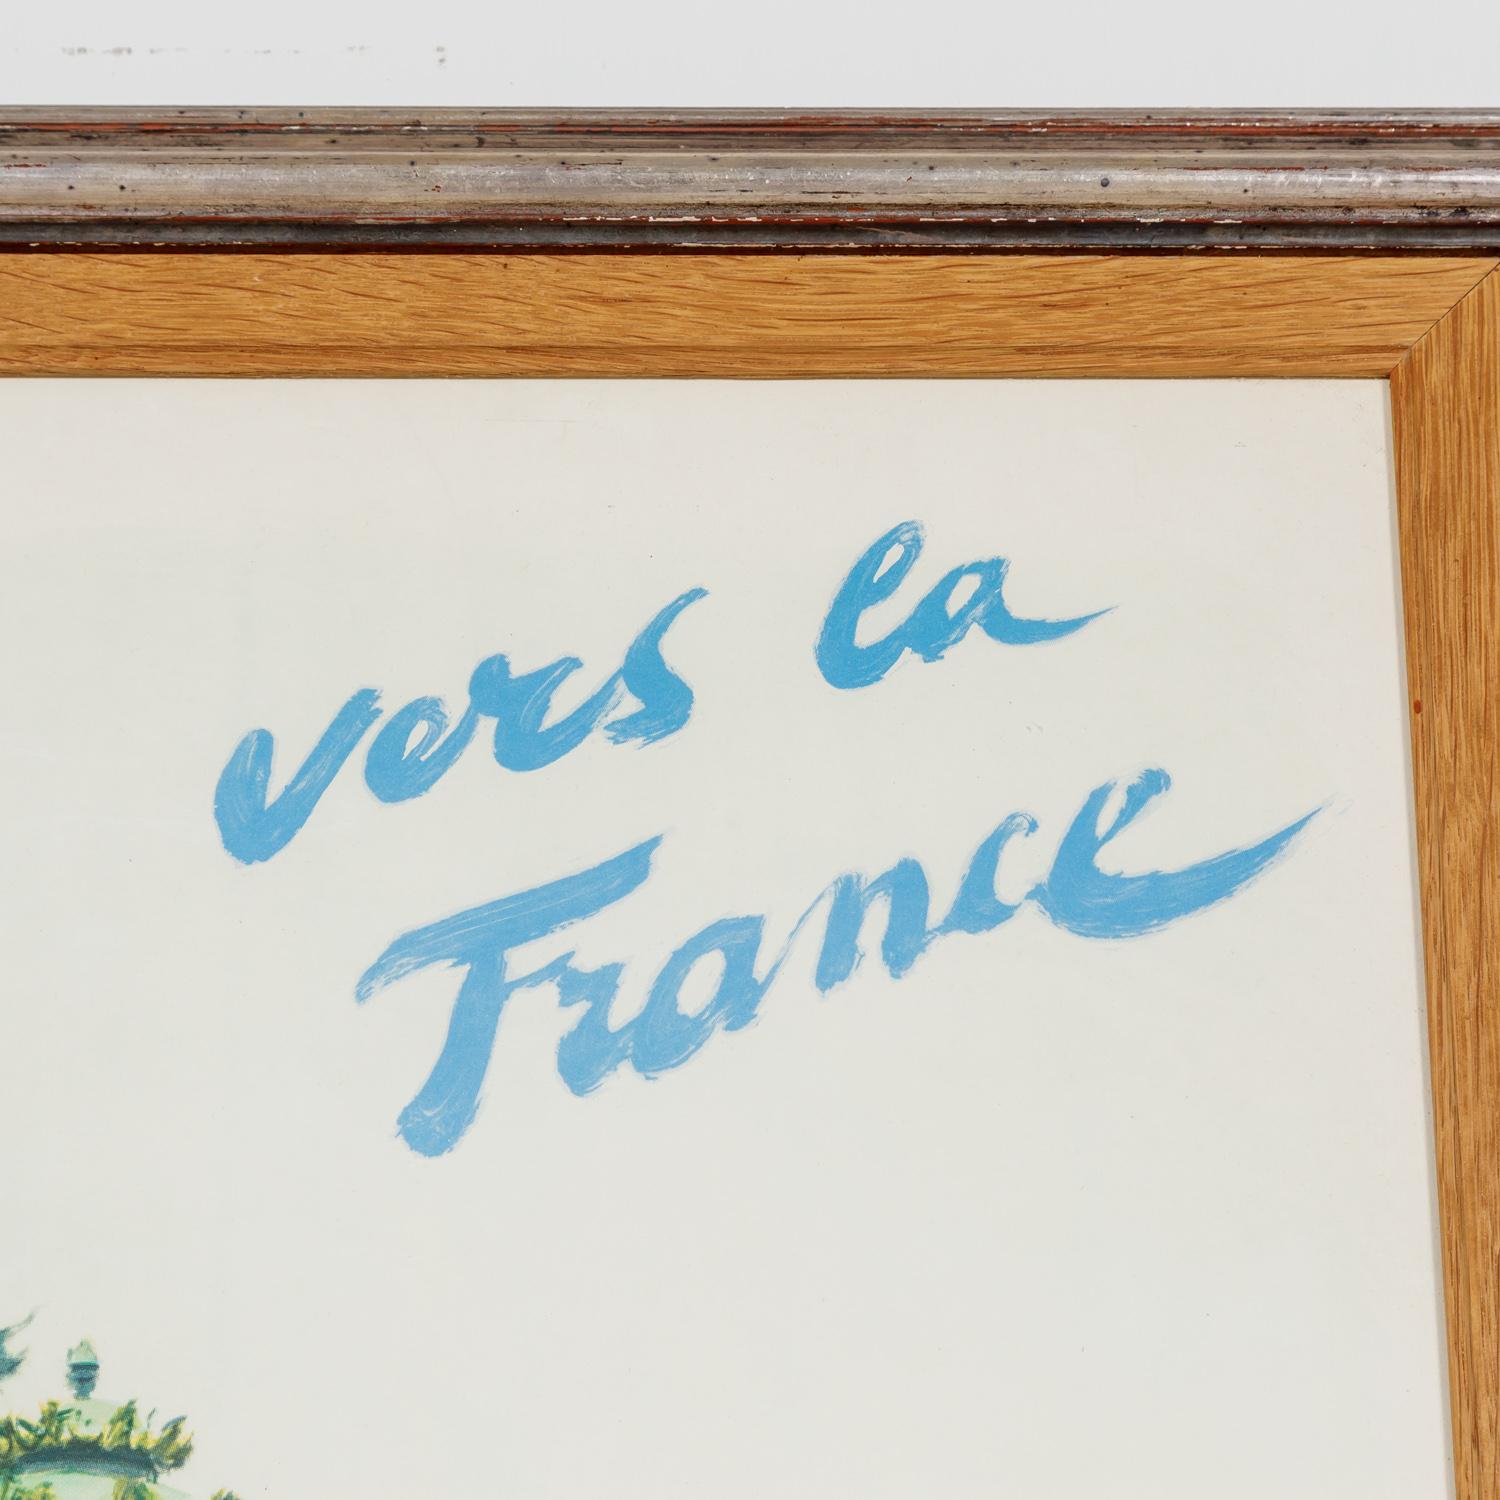 Original Framed Vintage French Travel Poster 